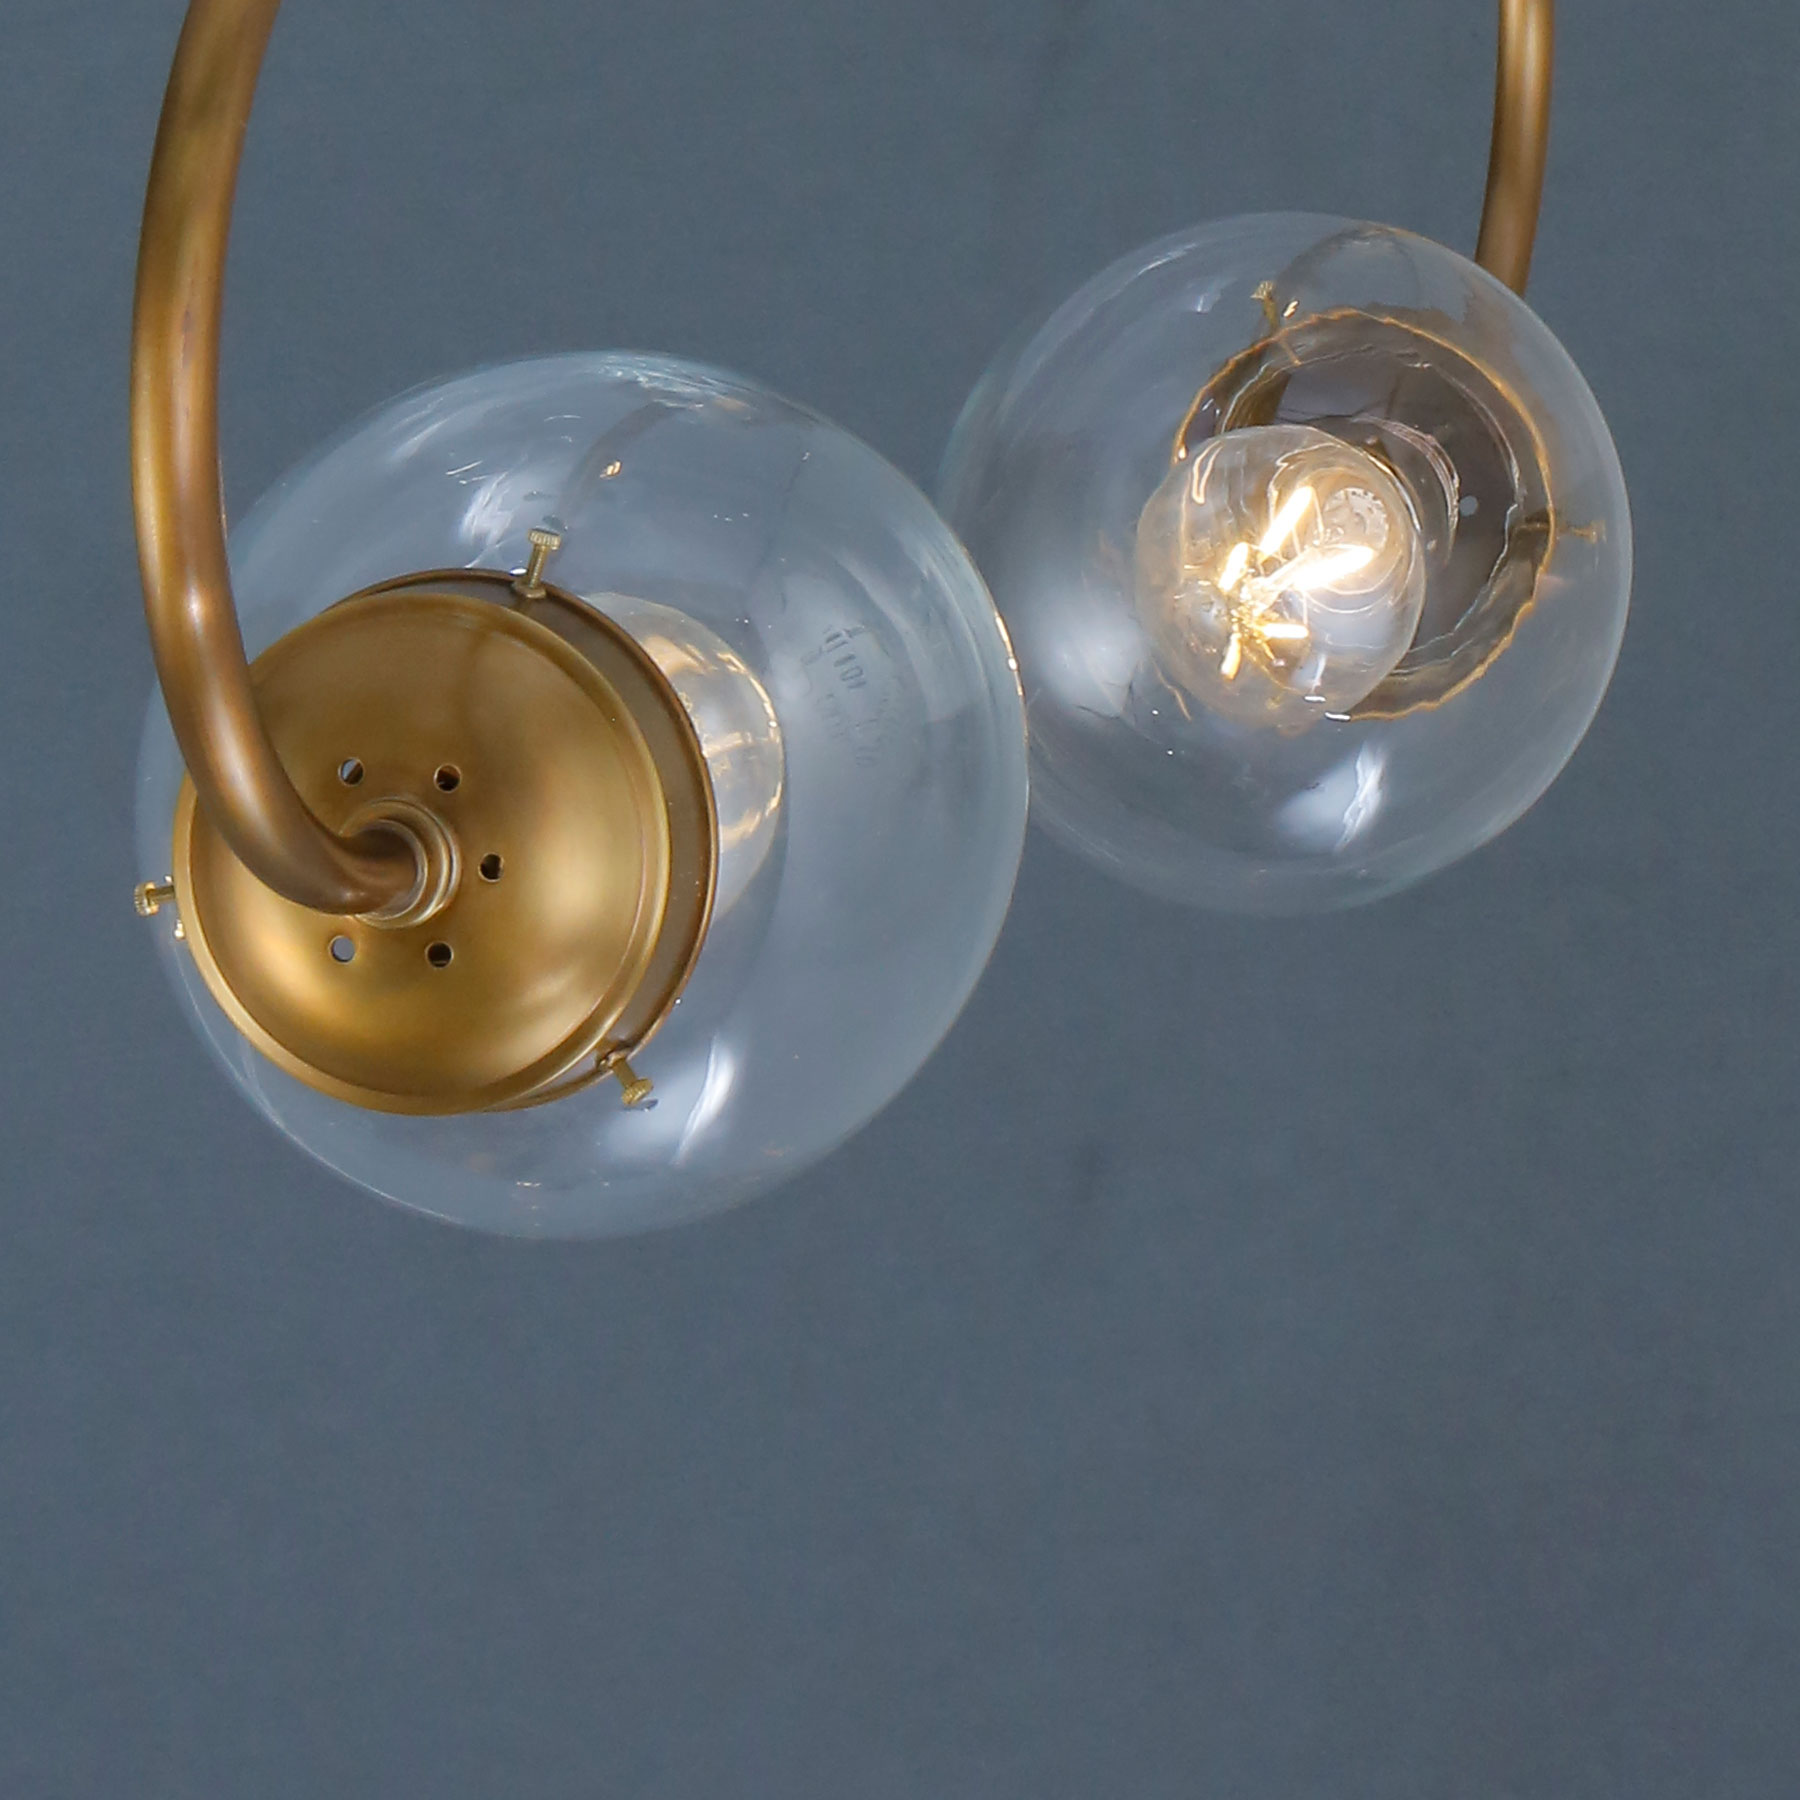 Doppel-Hängeleuchte Messing mit zwei Glaskugeln: Mit klaren Glaskugeln